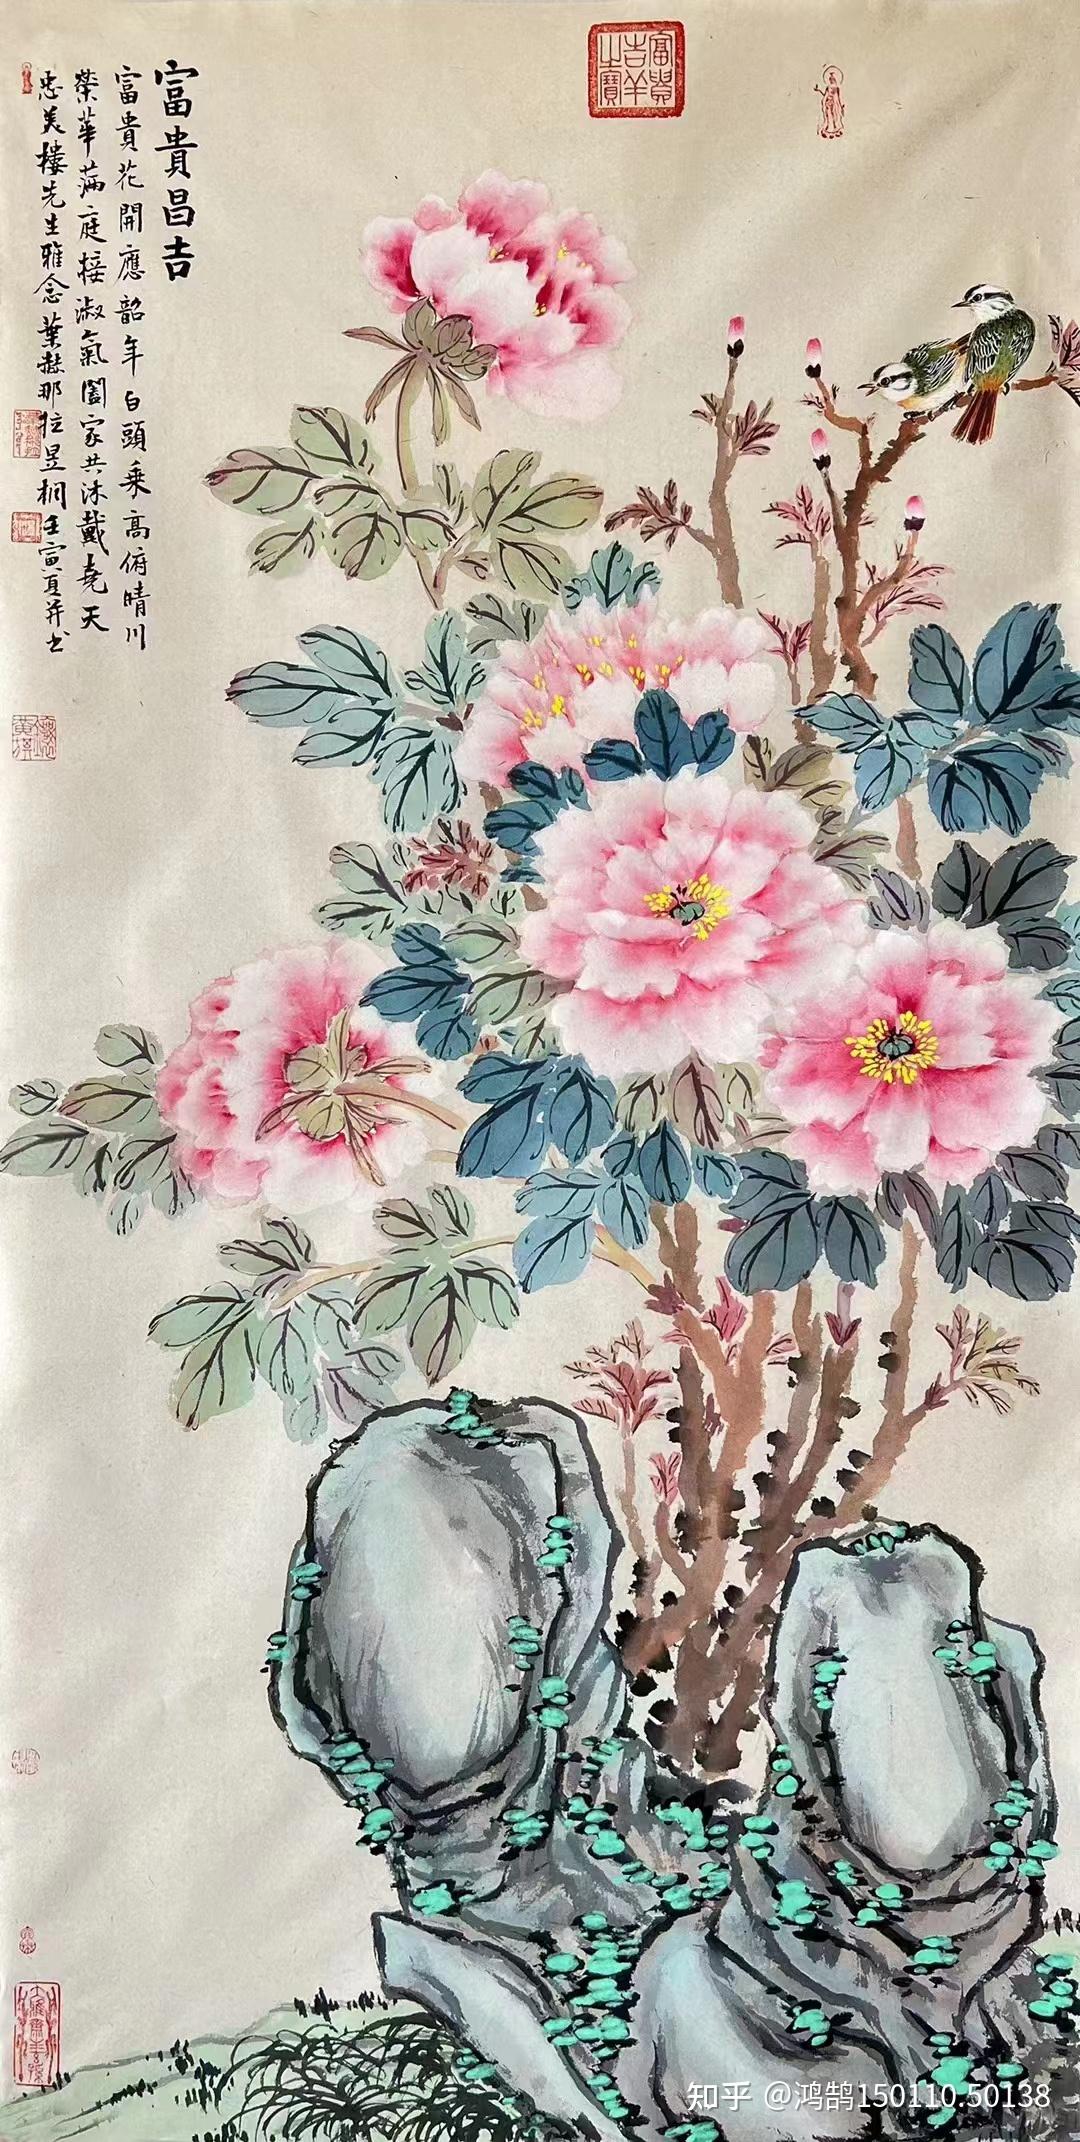 皇族艺术家叶赫那拉·昱桐牡丹国画作品欣赏 - 哔哩哔哩